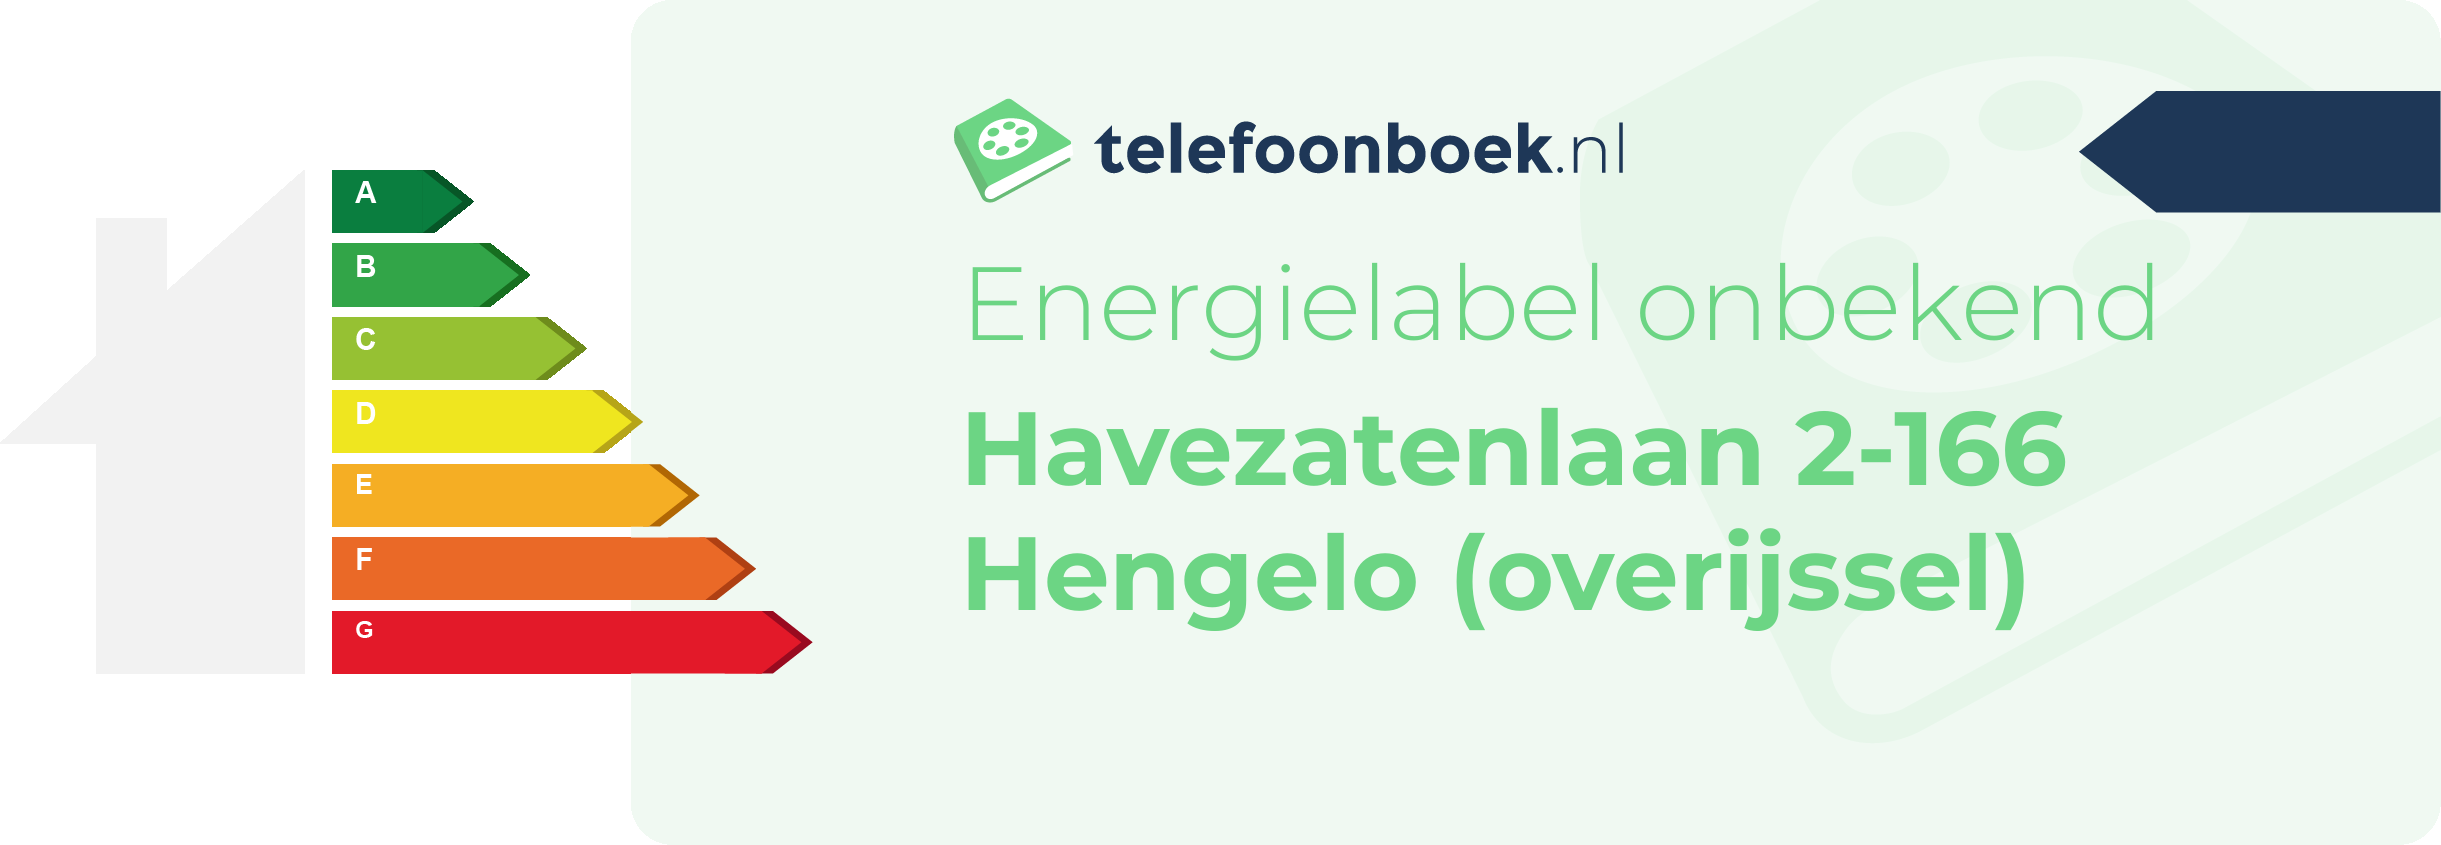 Energielabel Havezatenlaan 2-166 Hengelo (Overijssel)